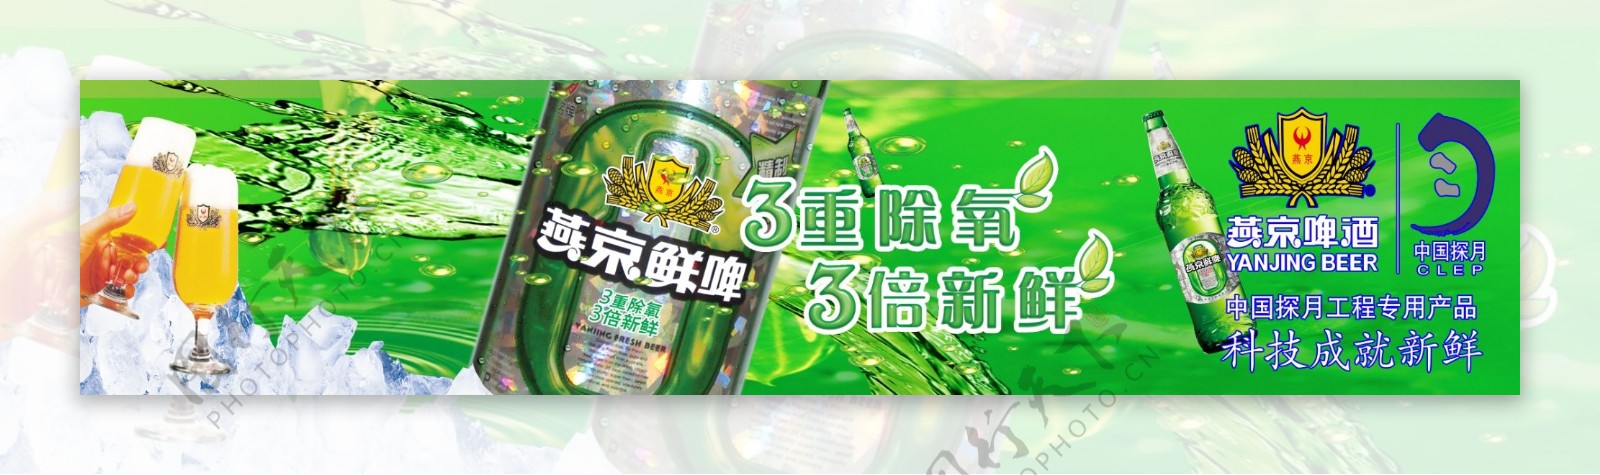 燕京啤酒门头广告图片